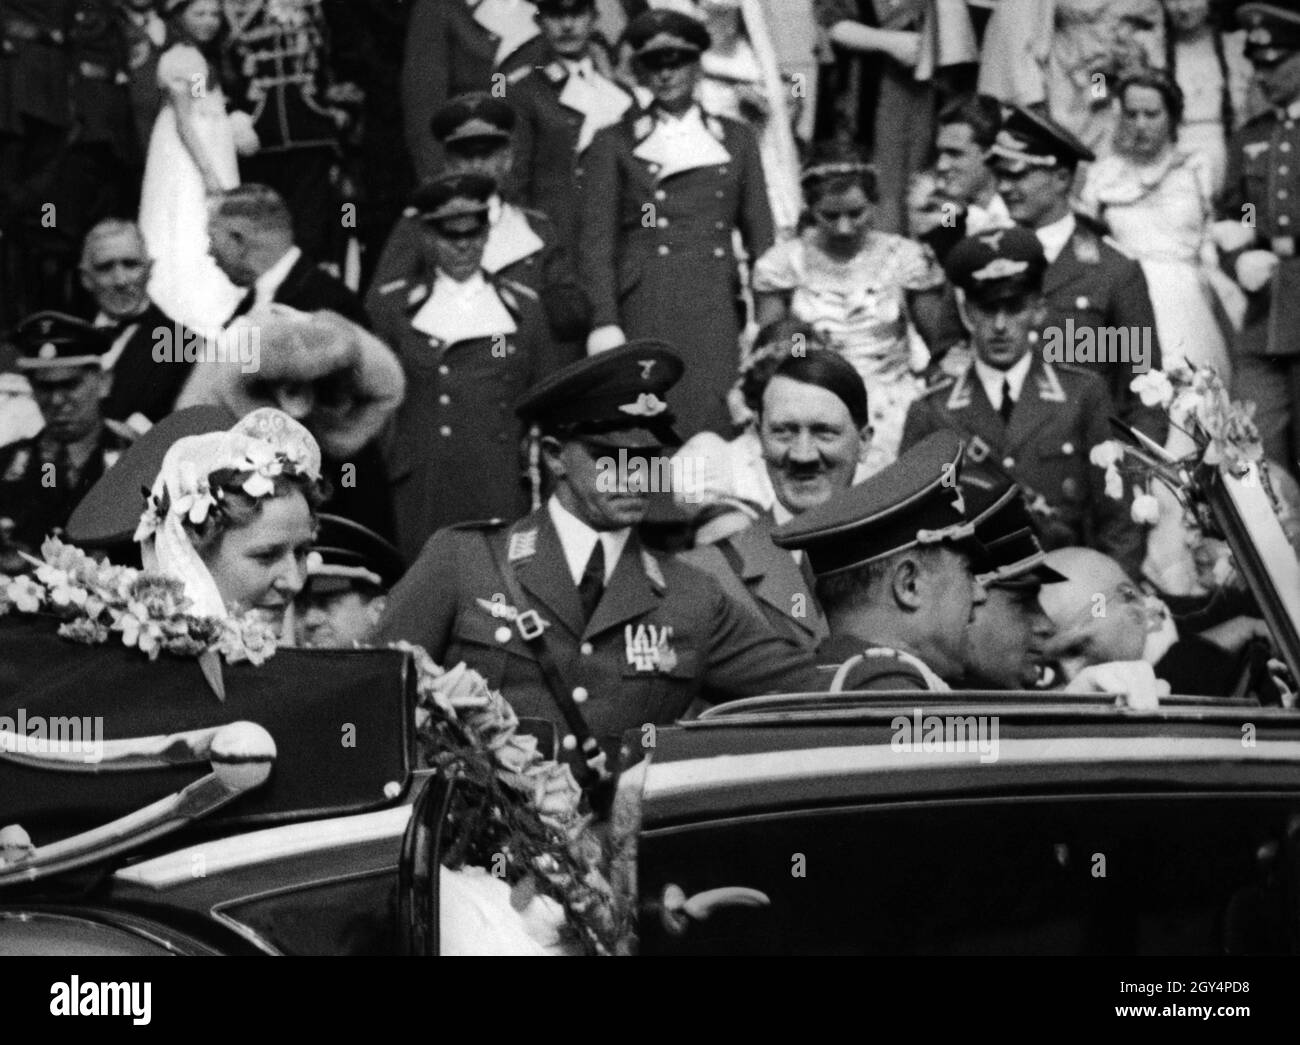 Emmy Göring, née Sonnemannn et Hermann Göring partent de la cathédrale de Berlin après leur cérémonie de mariage sous les yeux du meilleur homme Adolf Hitler.En arrière-plan, entre autres, de gauche à droite, Julius Schaub, Franz von Papen et Wilhelm Keitel.[traduction automatique] Banque D'Images